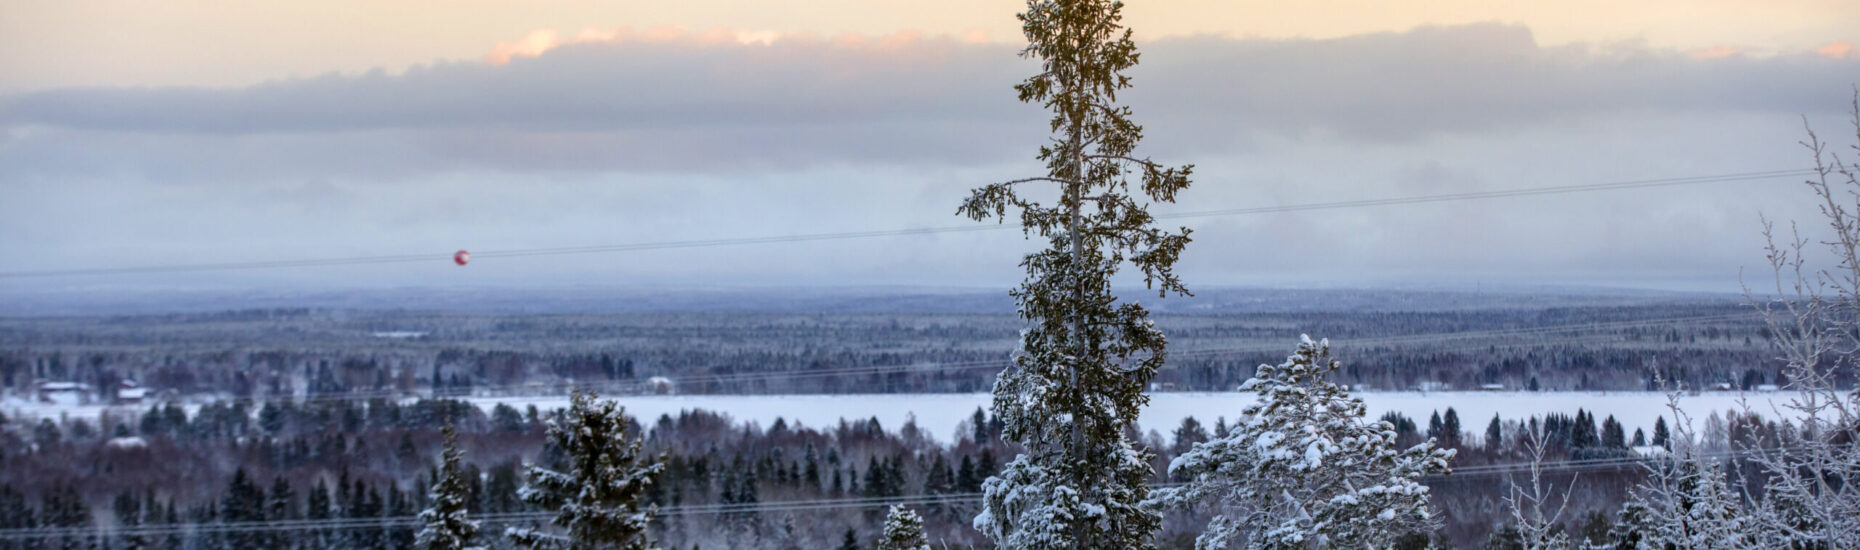 Talvista lumista metsämaisemaa. Kuvattu korkealta mäeltä.